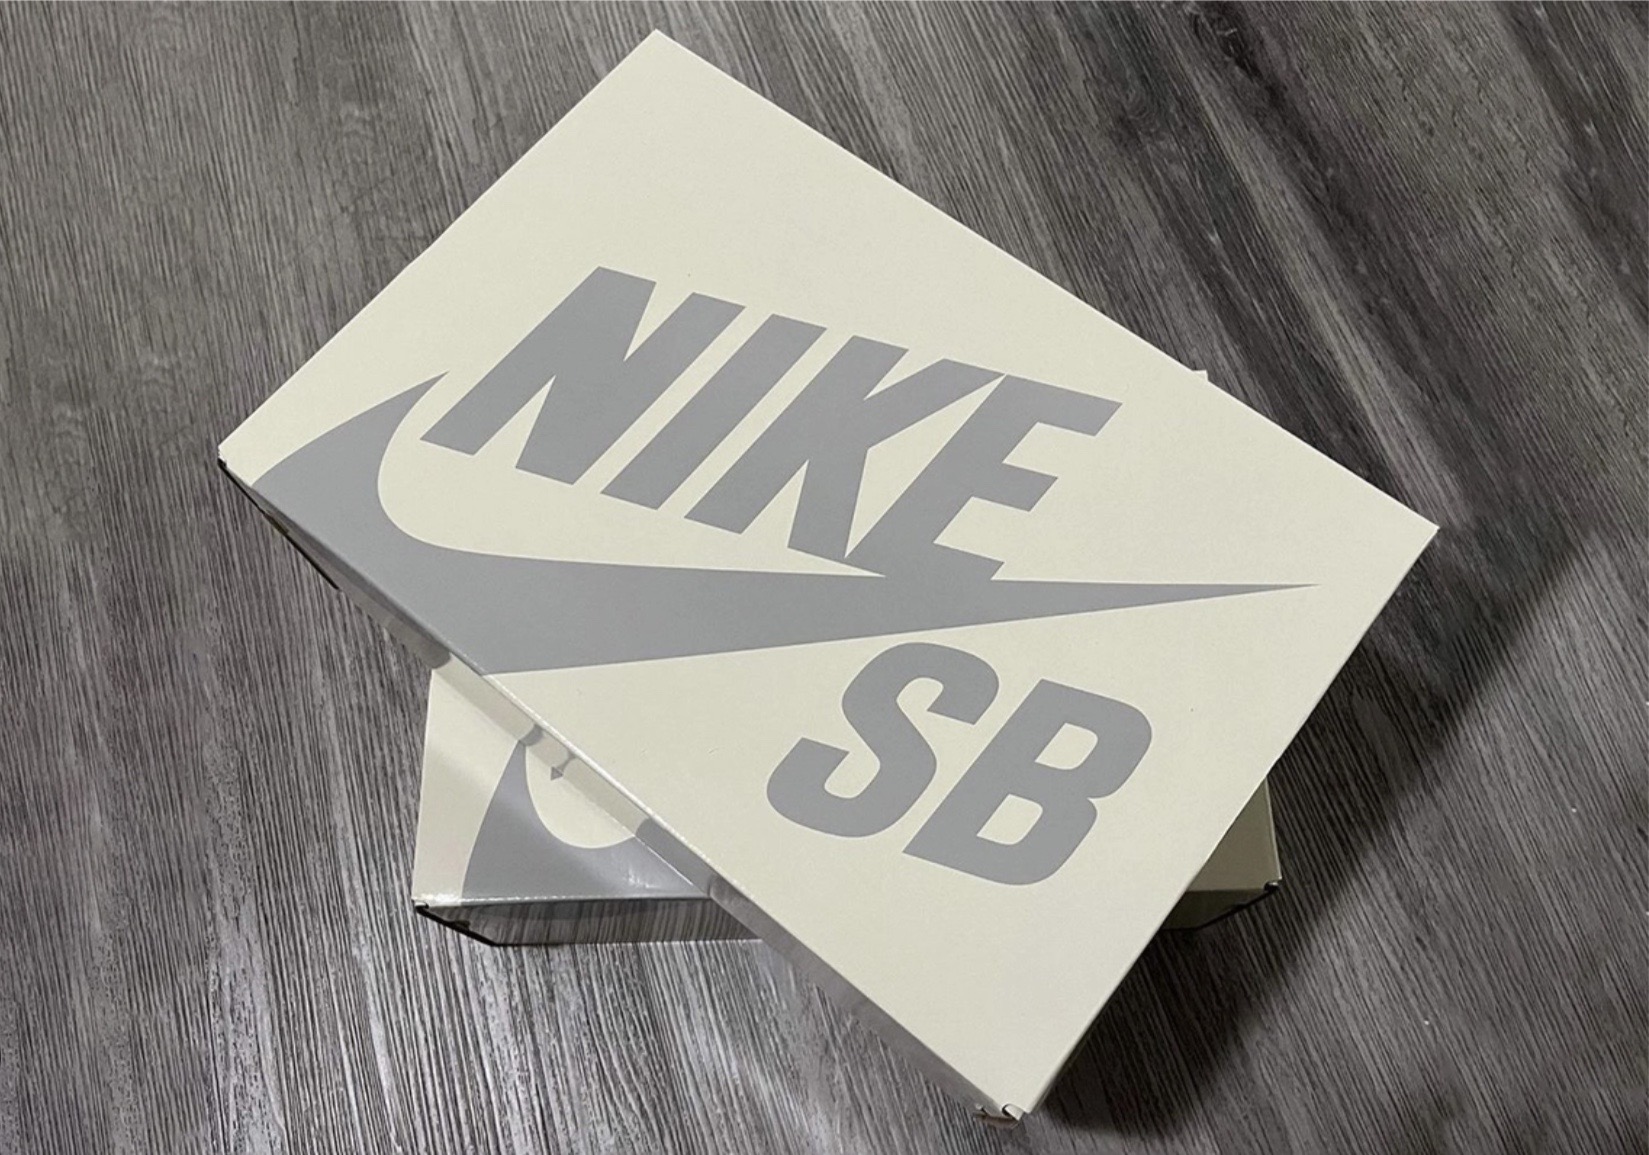 Nike SB thay đổi hộp đựng giày sang màu kem và màu xám